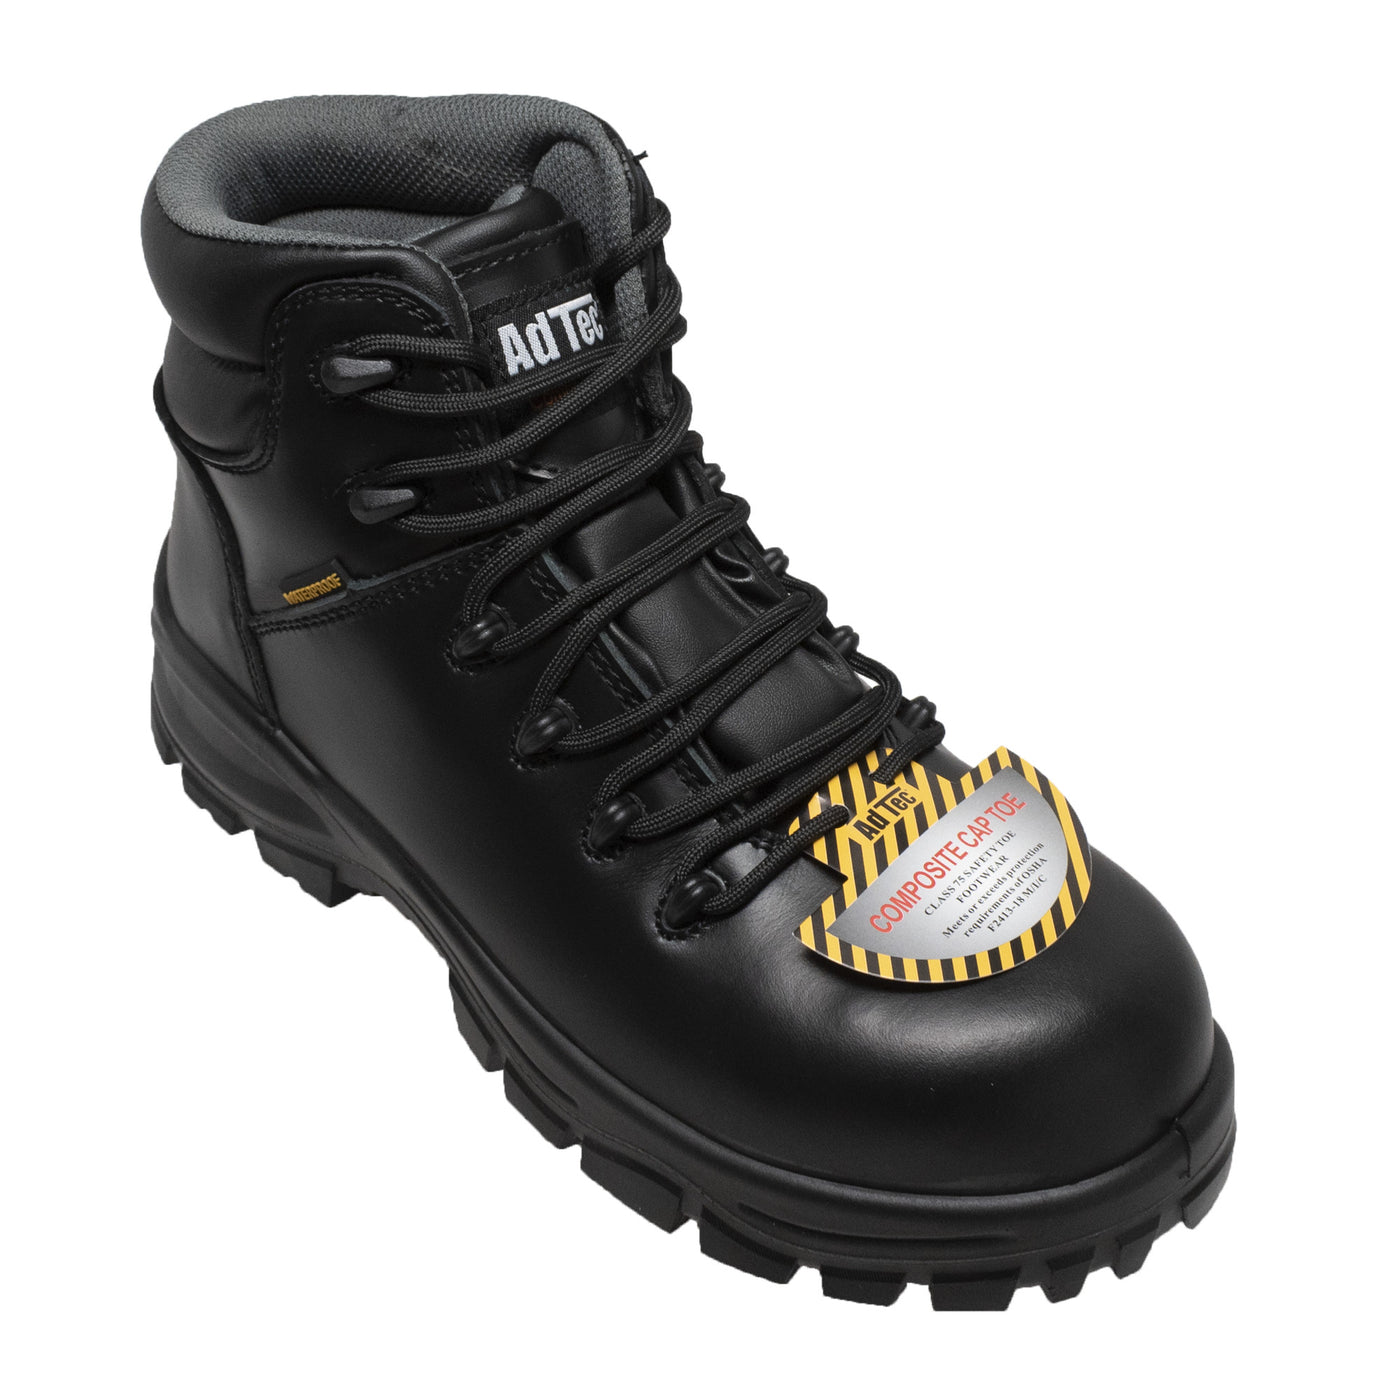 Women's 6" Black Waterproof Cap Toe Work Boot - 8903-BK - Shop Genuine Leather men & women's boots online | AdTecFootWear